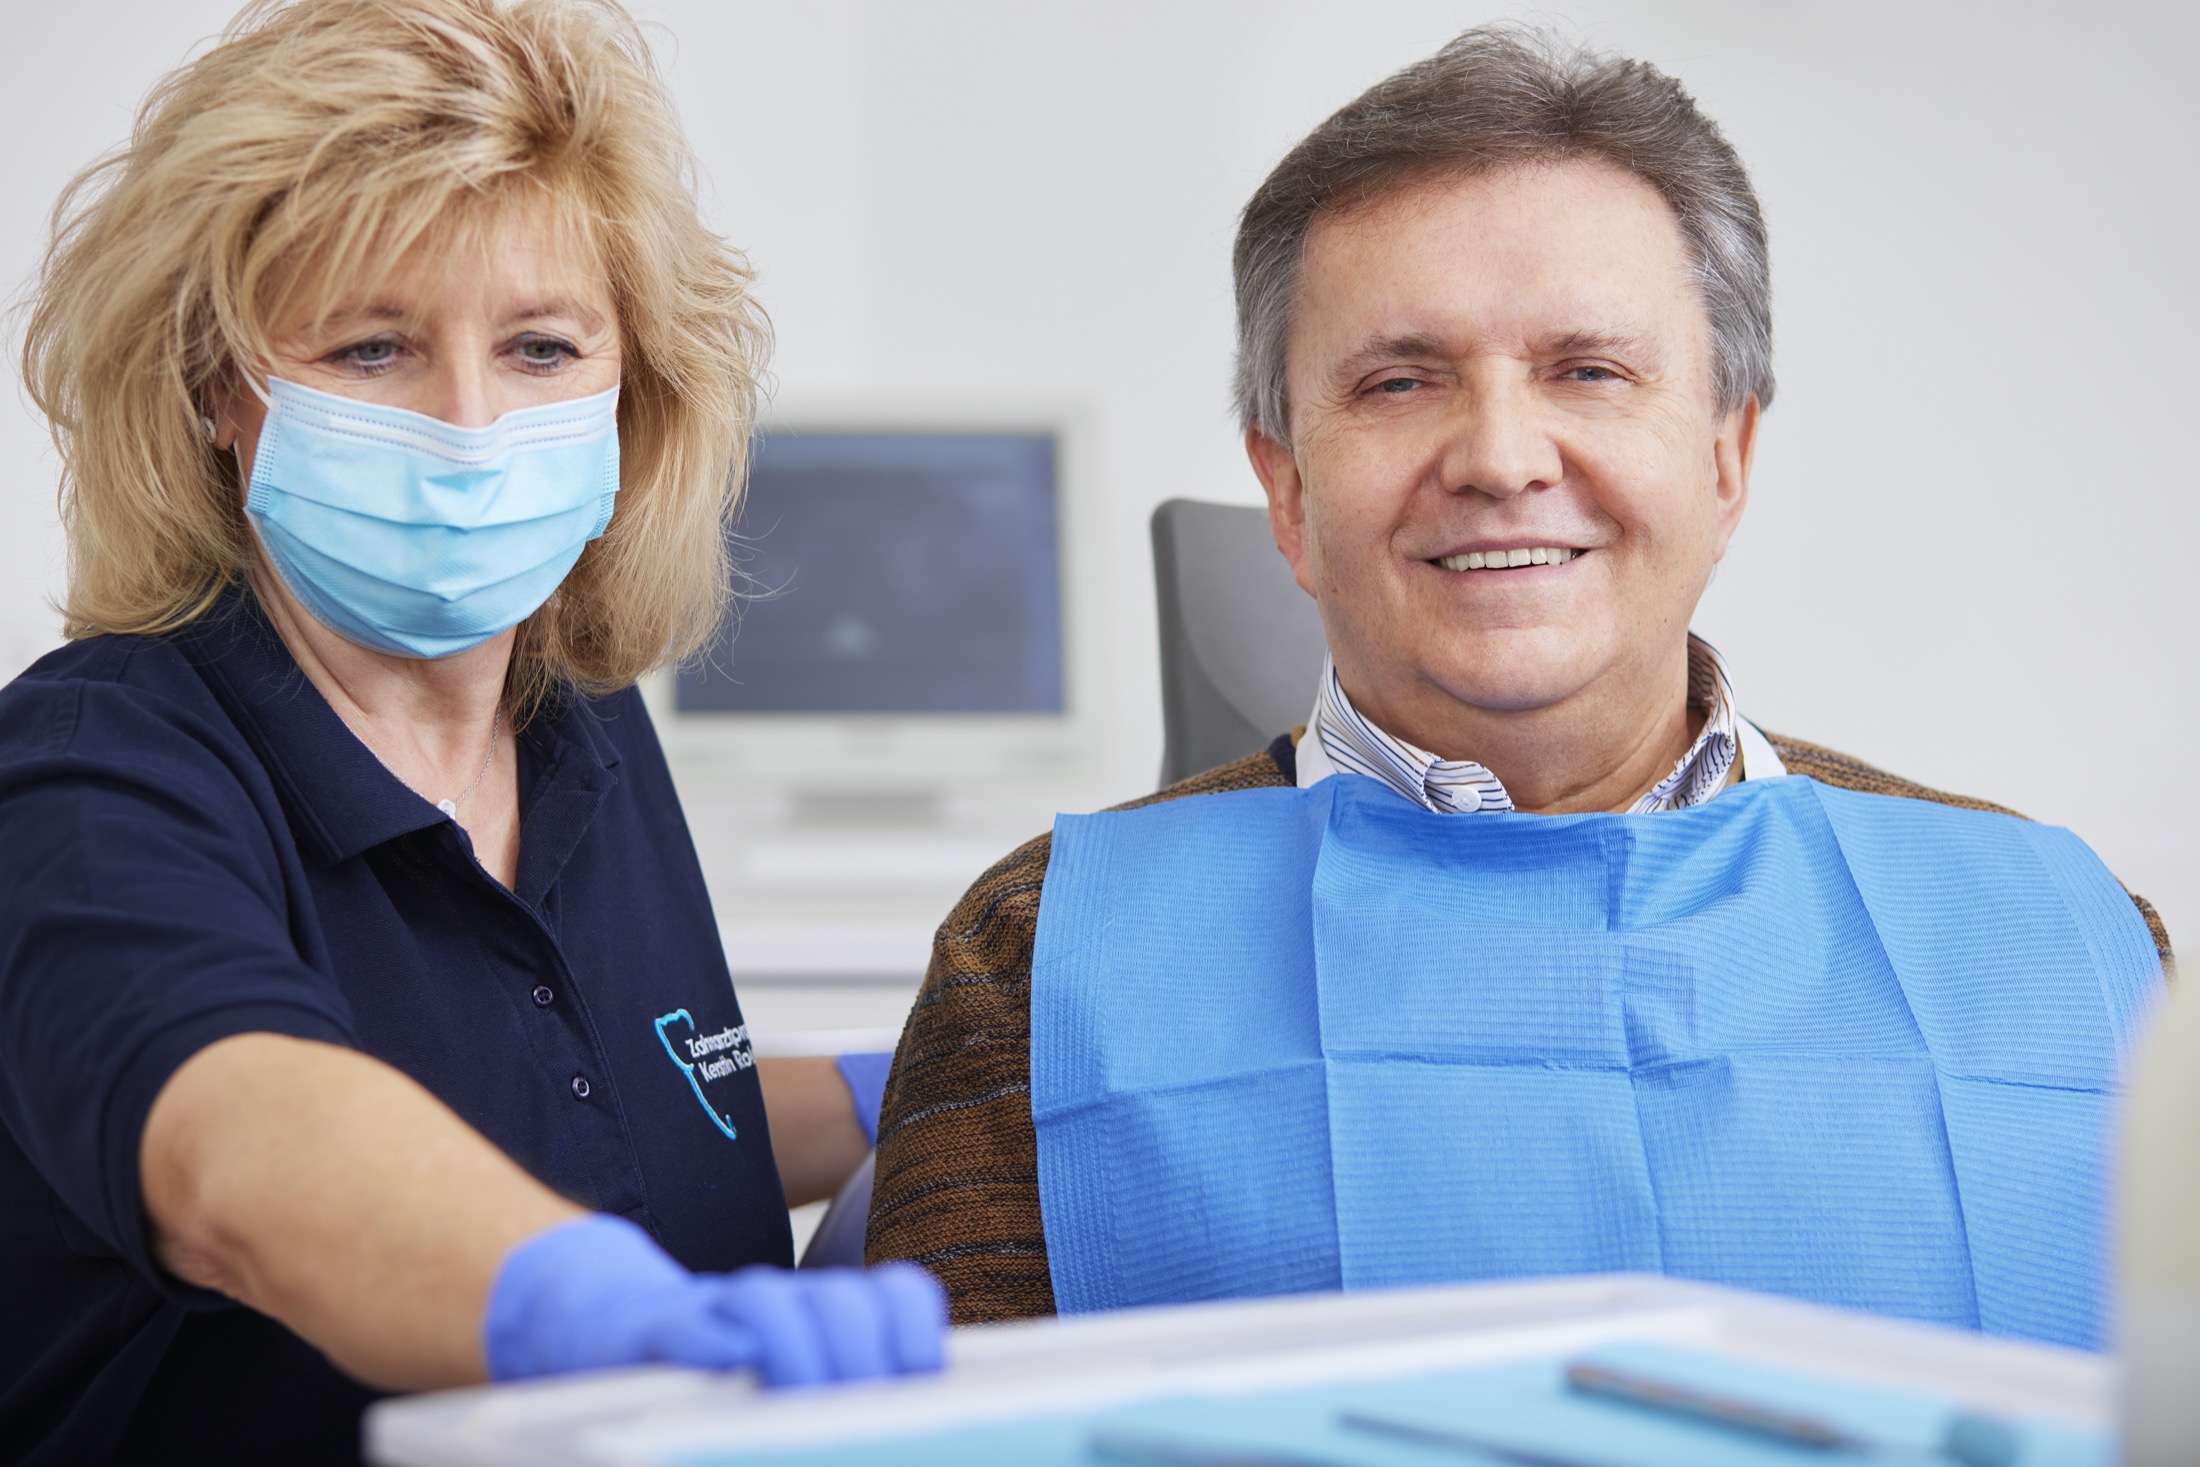 Zahnerhalt ist unsere Priorität: Endontologie bei Ihrem Zahnarzt Mannheim